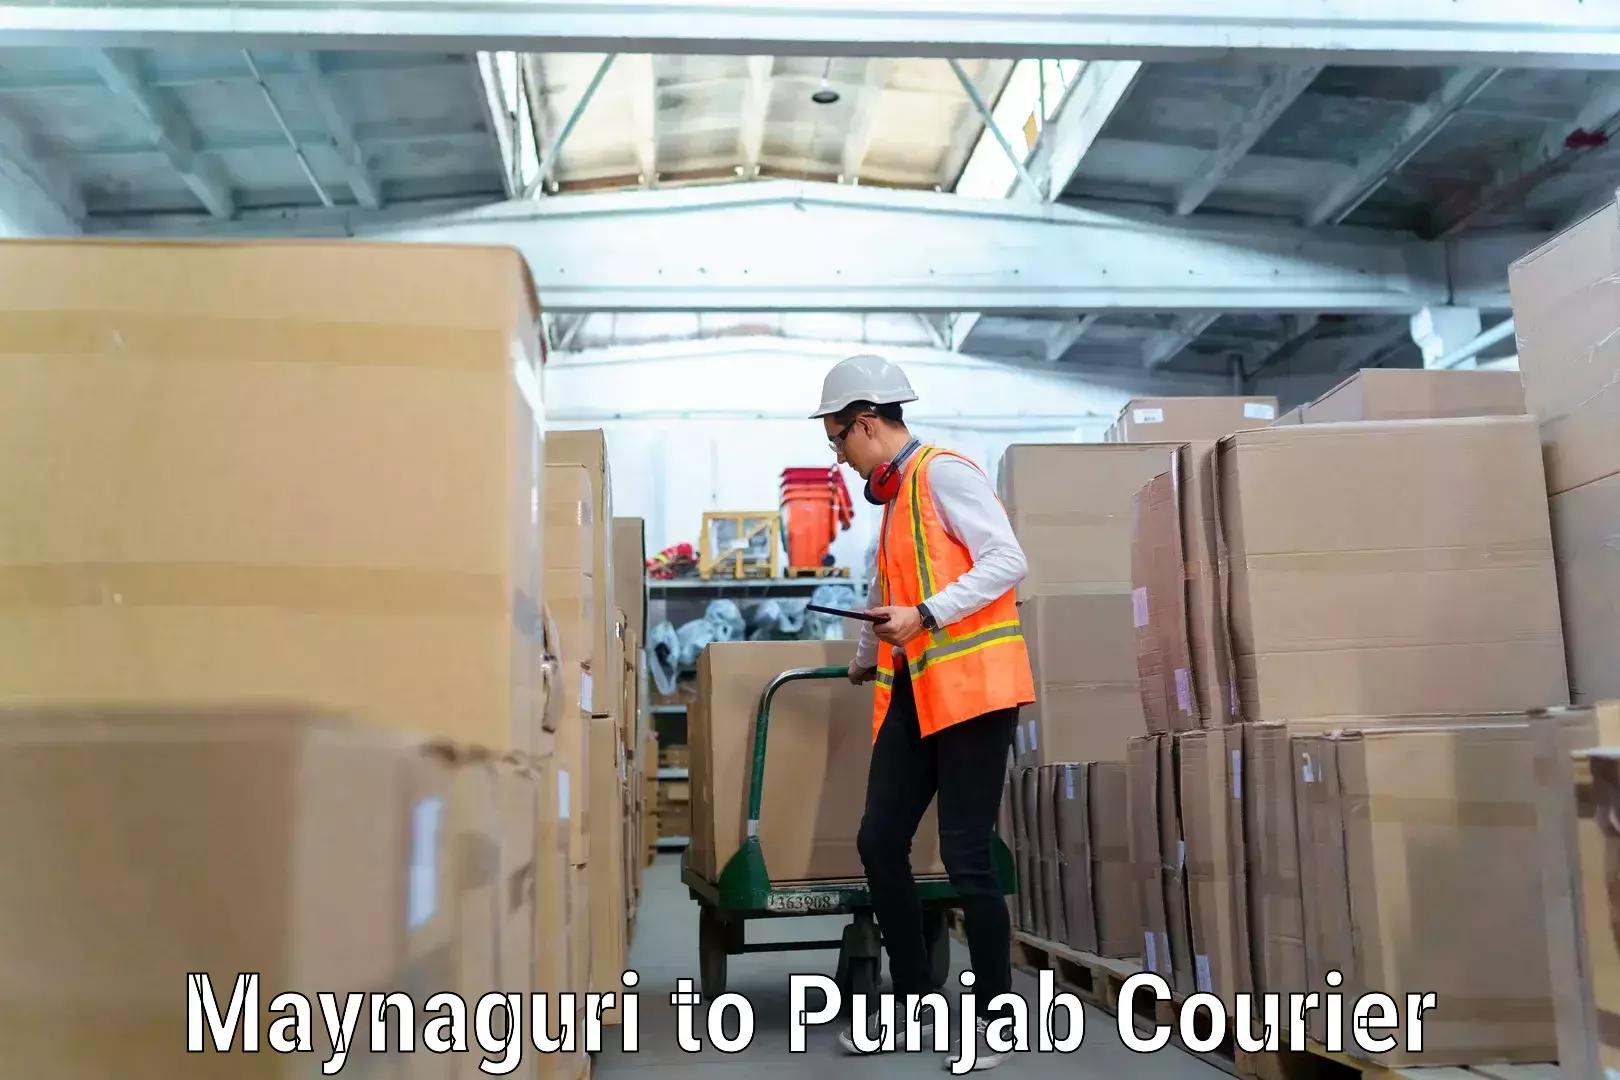 Residential moving experts Maynaguri to Punjab